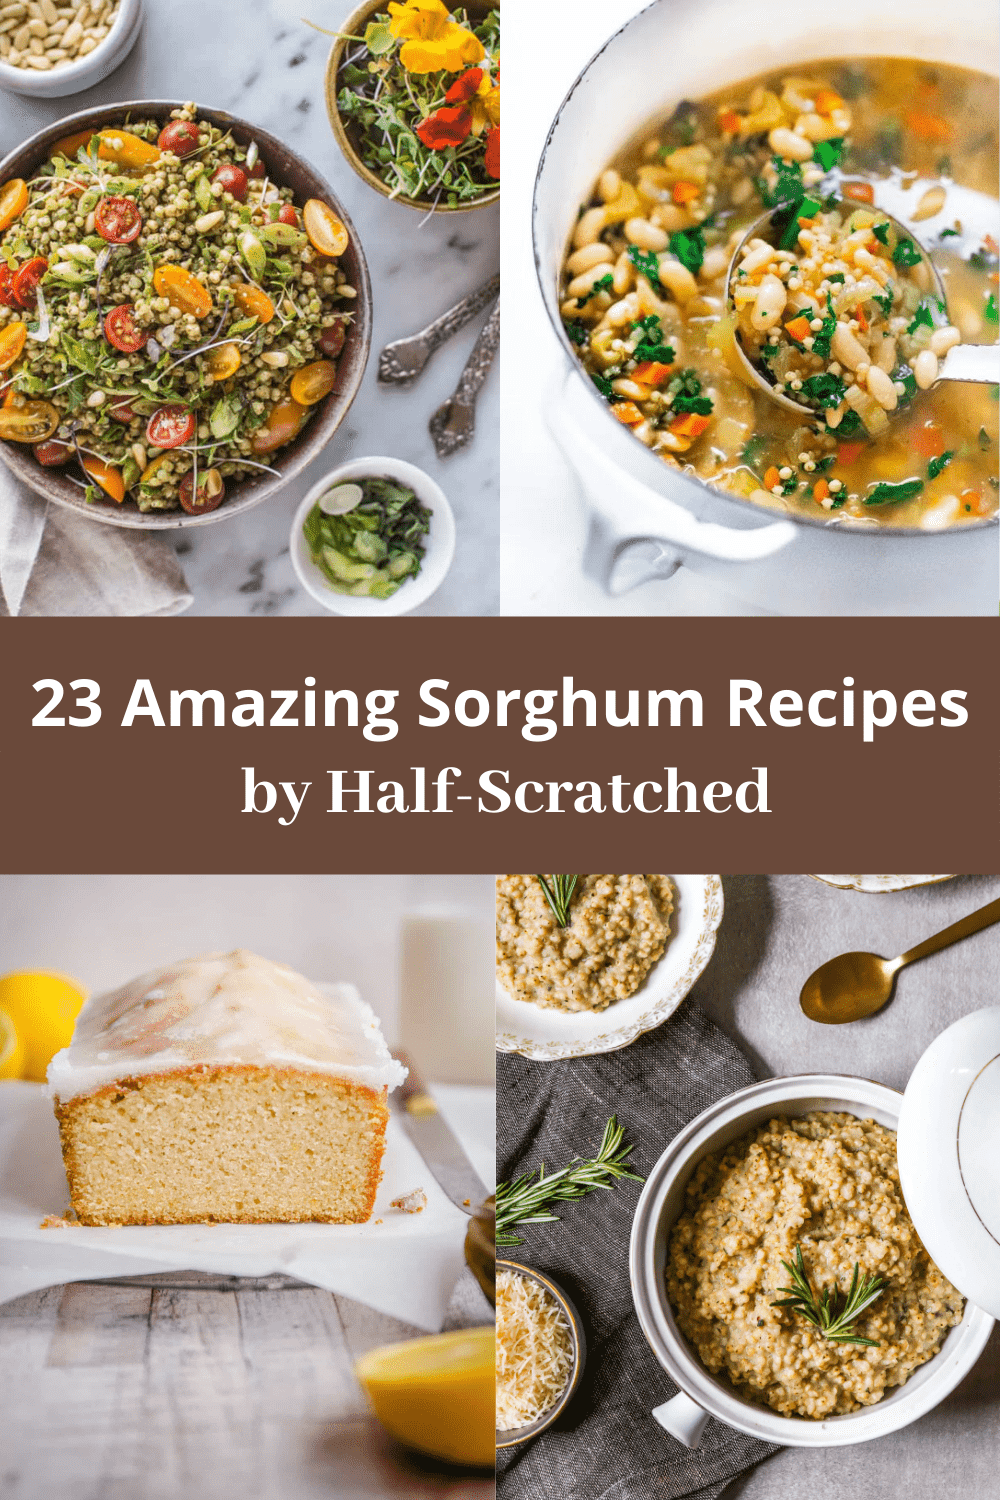 23 Amazing Sorghum Recipes